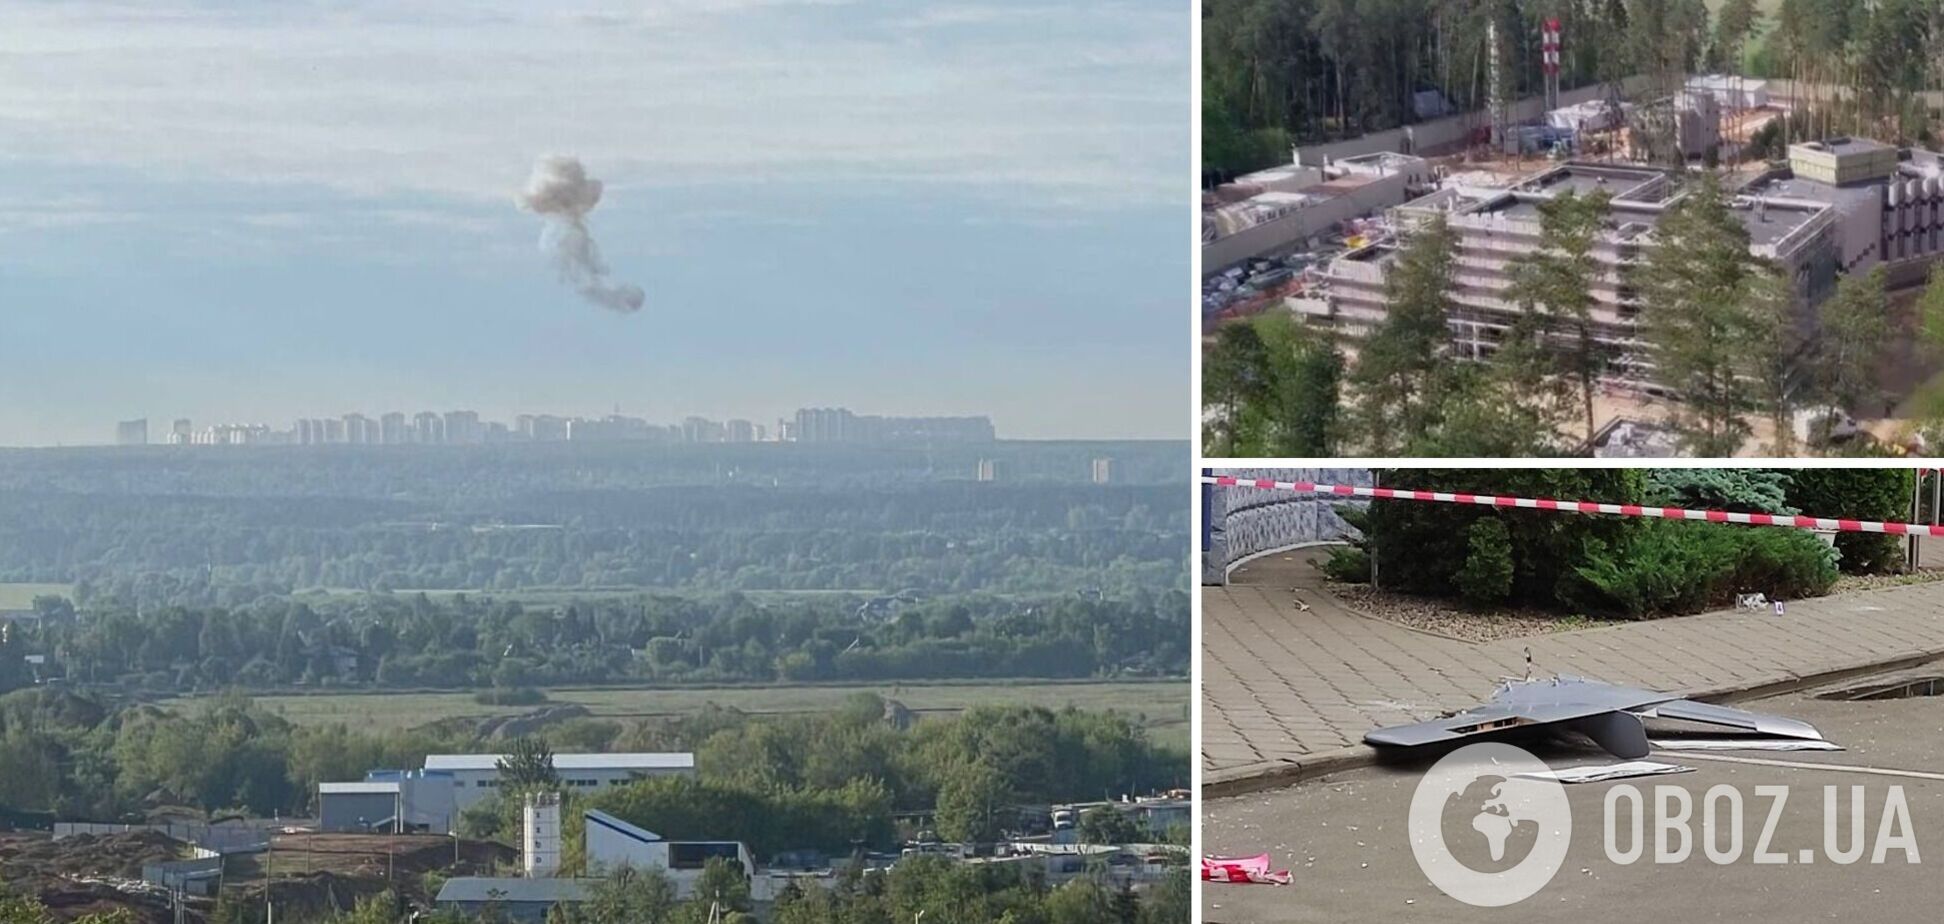 Один из дронов упал в 3 км от резиденции Путина: новые детали 'бавовны' в РФ, вызвавшей истерику россиян